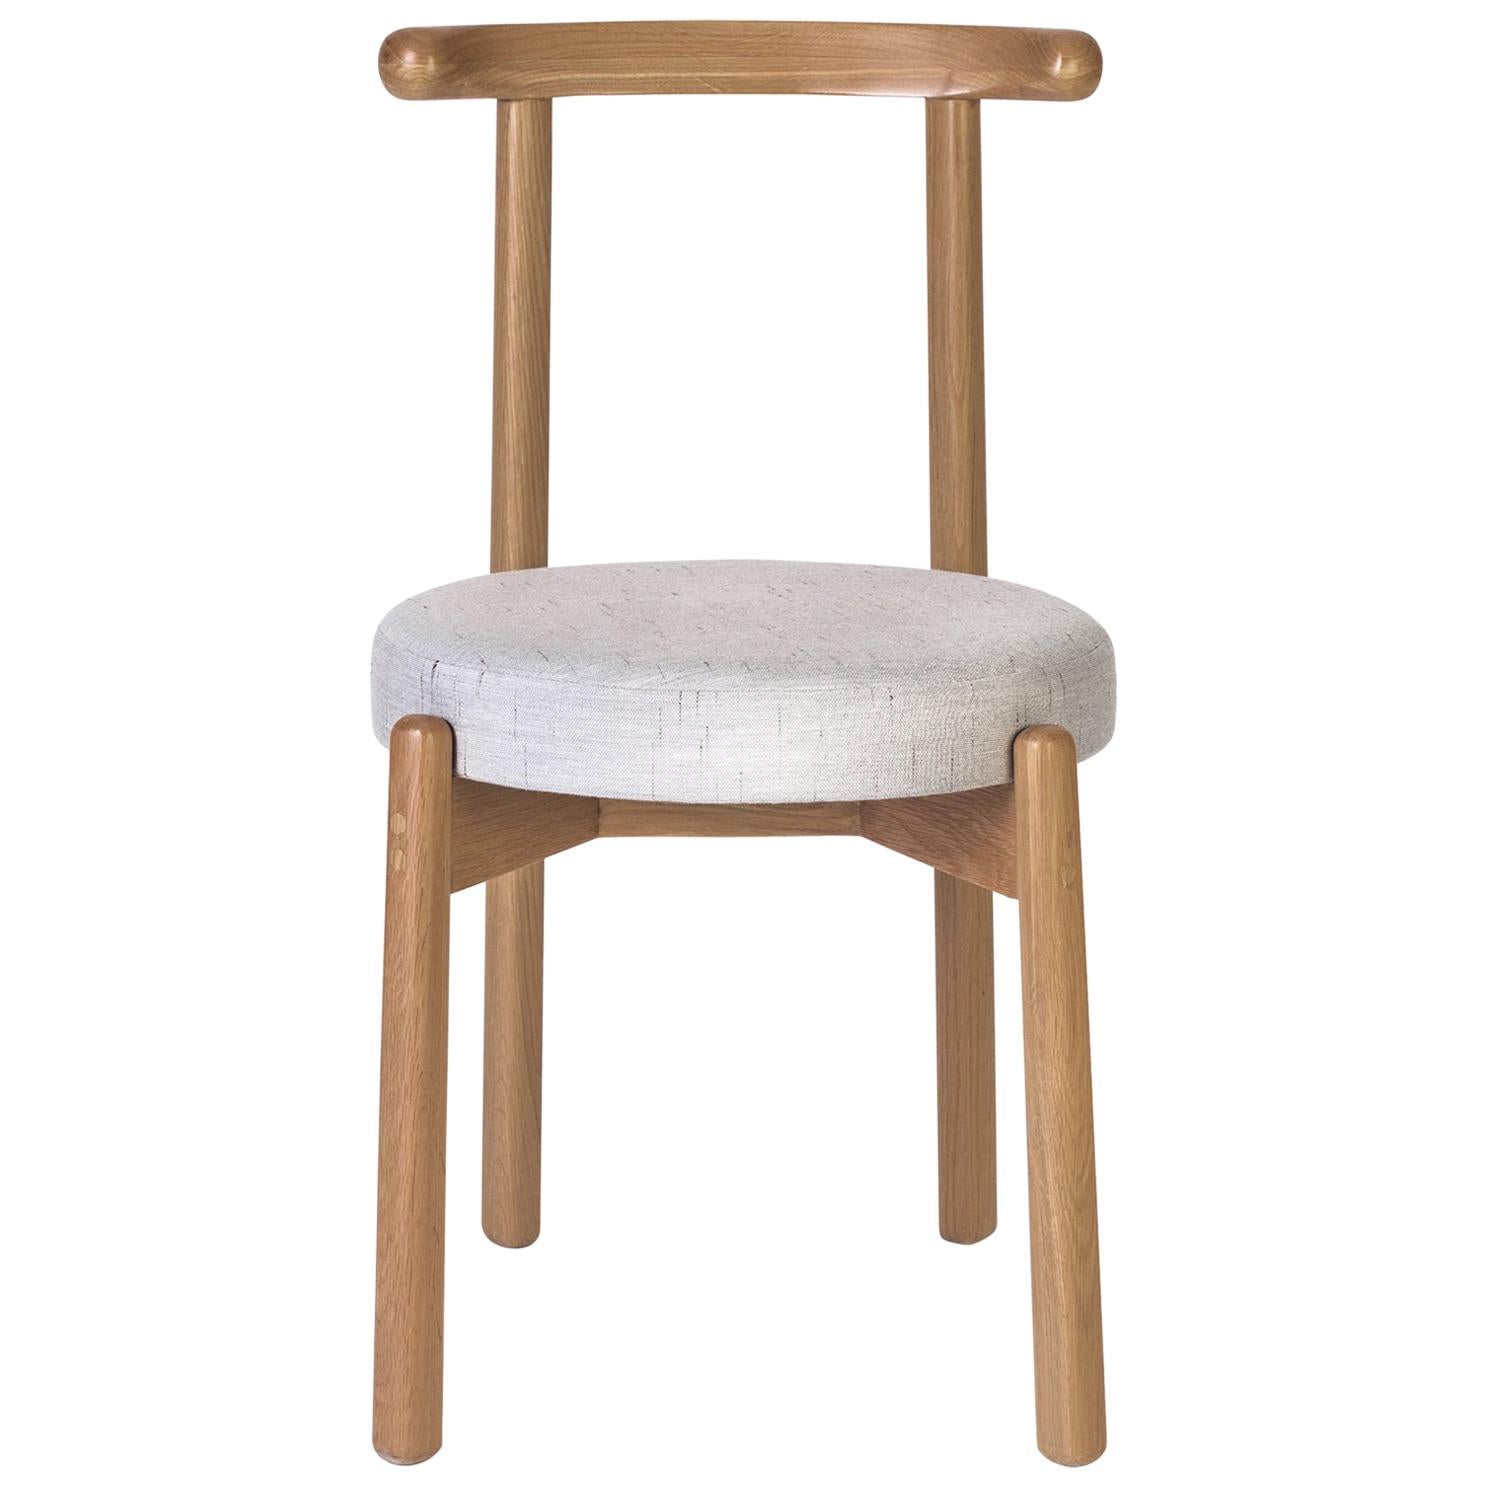 Die Schlichtheit dieses Designs macht diesen Stuhl zu einem vielseitigen Möbelstück, das zu verschiedenen Esstischen und Räumen passt. Die Struktur ist aus massivem Eichenholz gefertigt. Die Kissenbezüge können auf Anfrage gemäß den Katalogoptionen